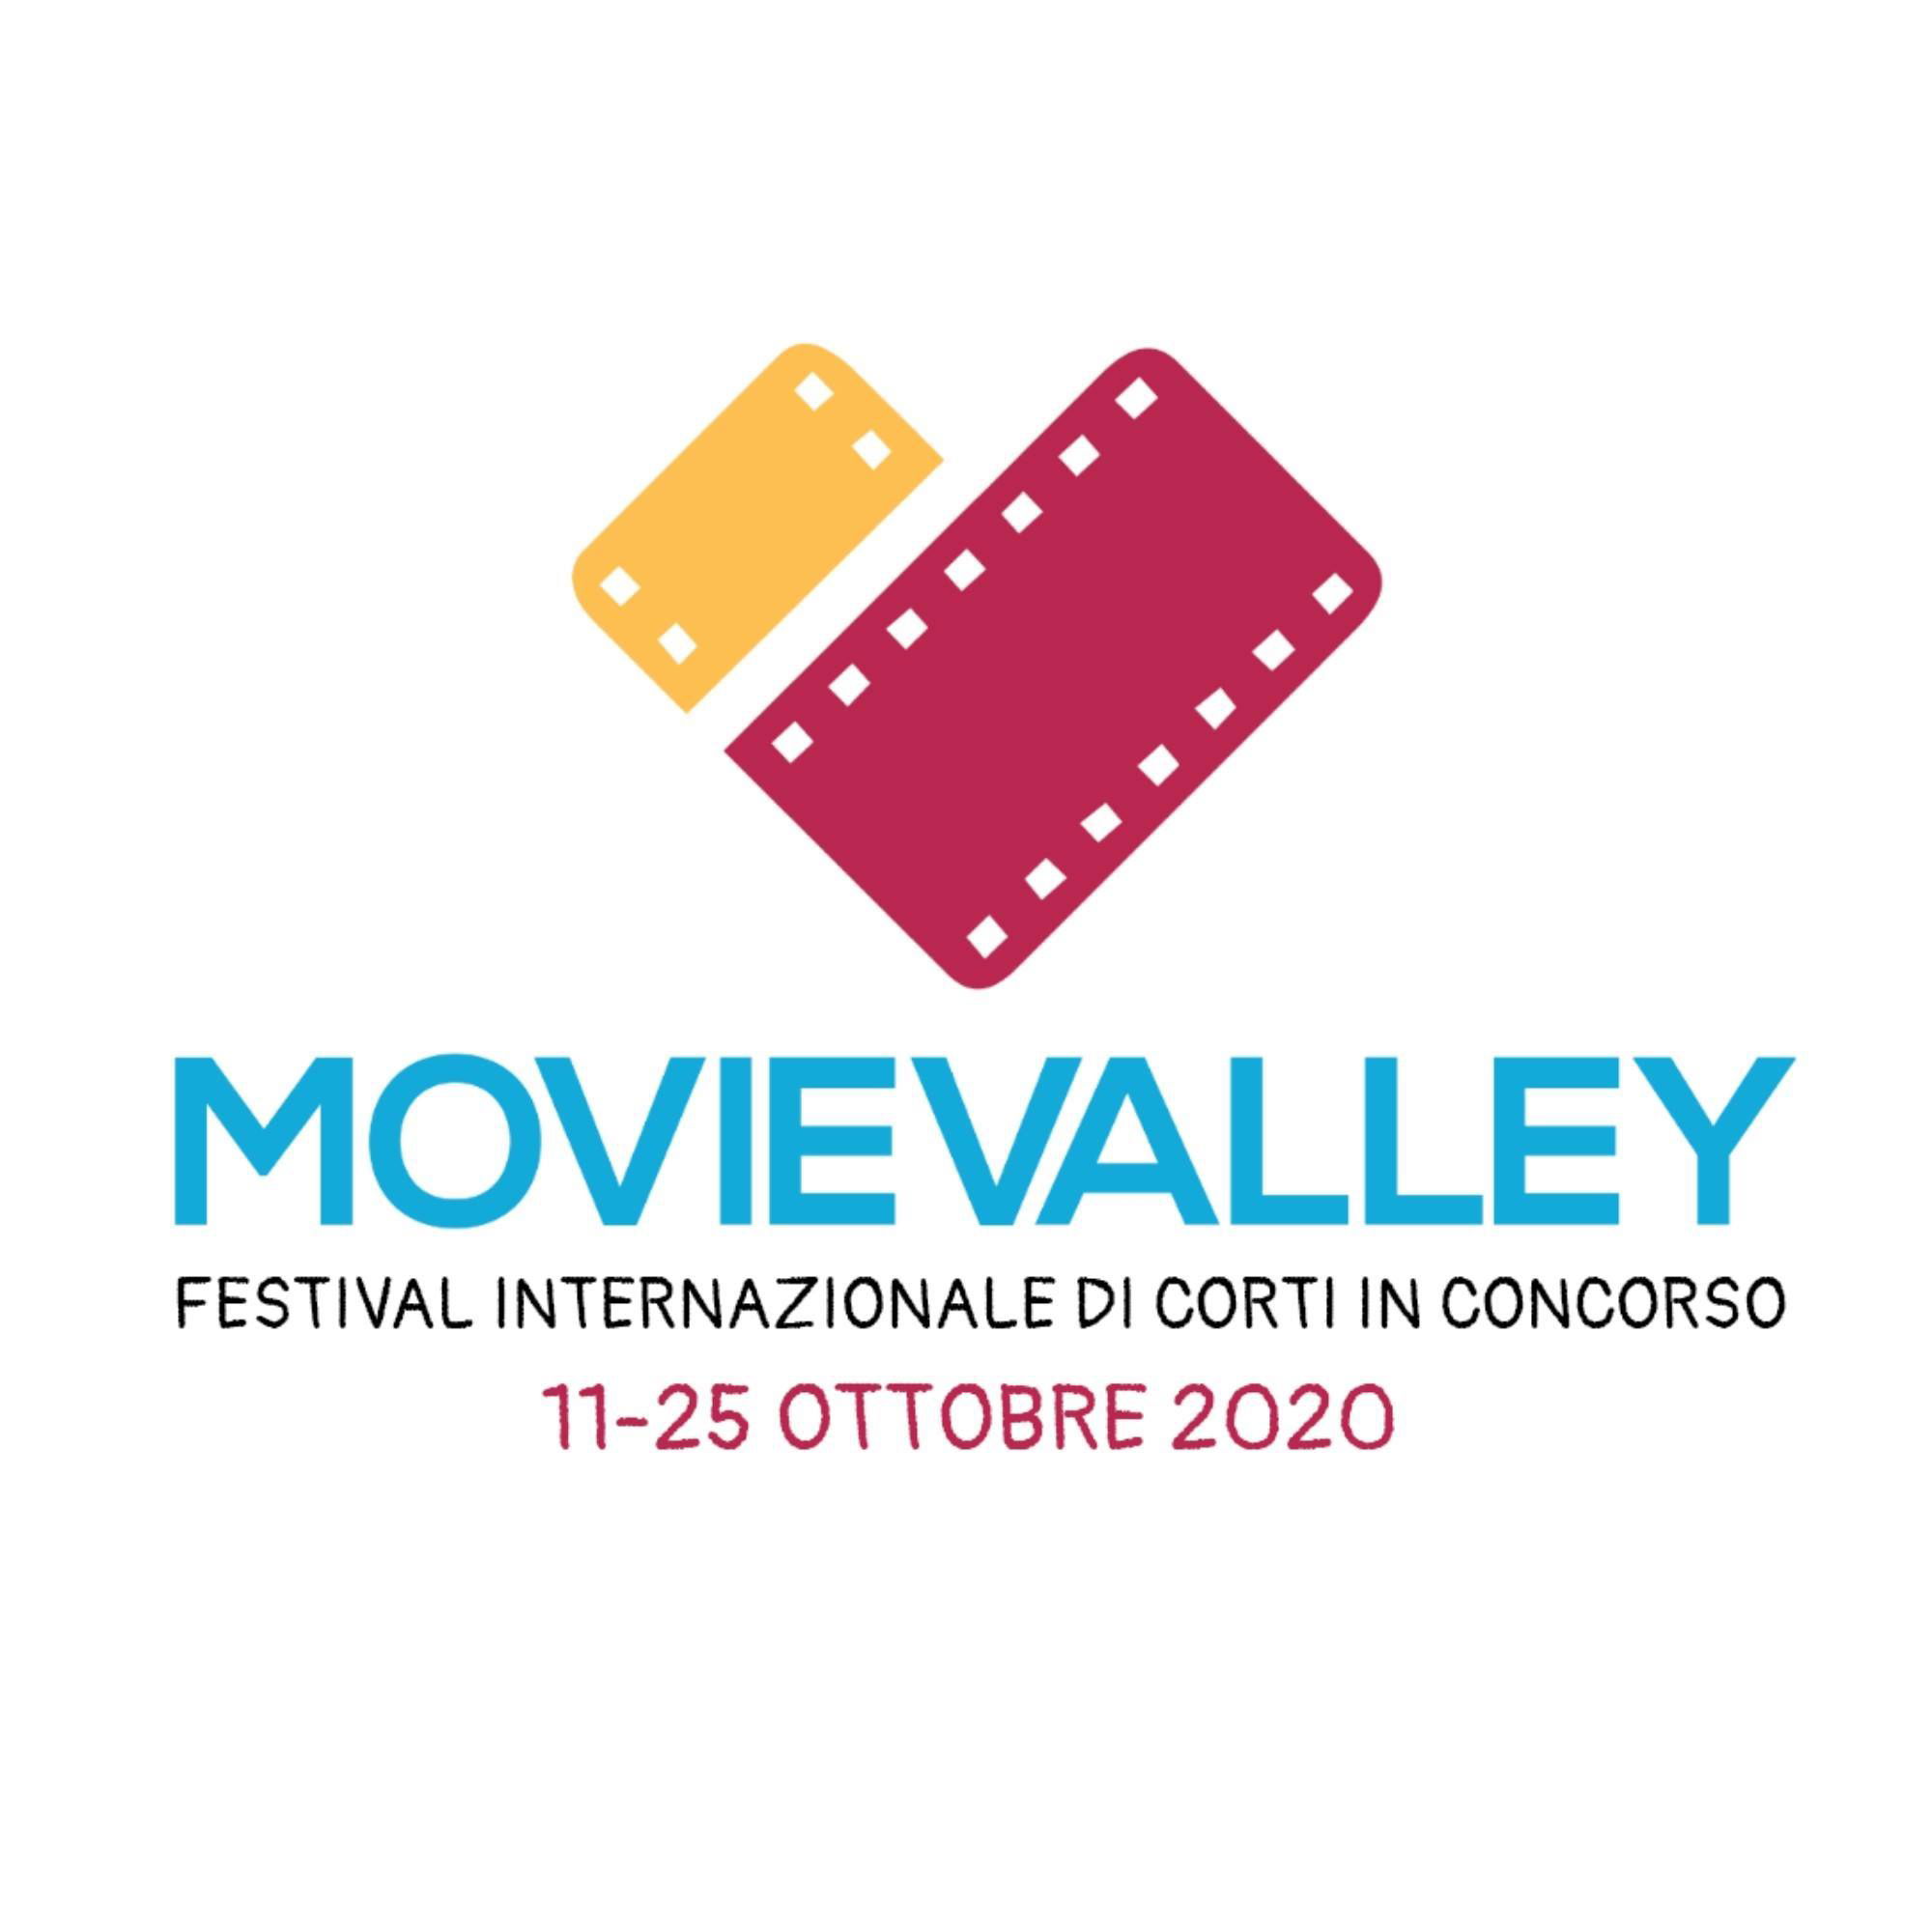 Movievalley 2020 – I finalisti di Fiction Internazionale